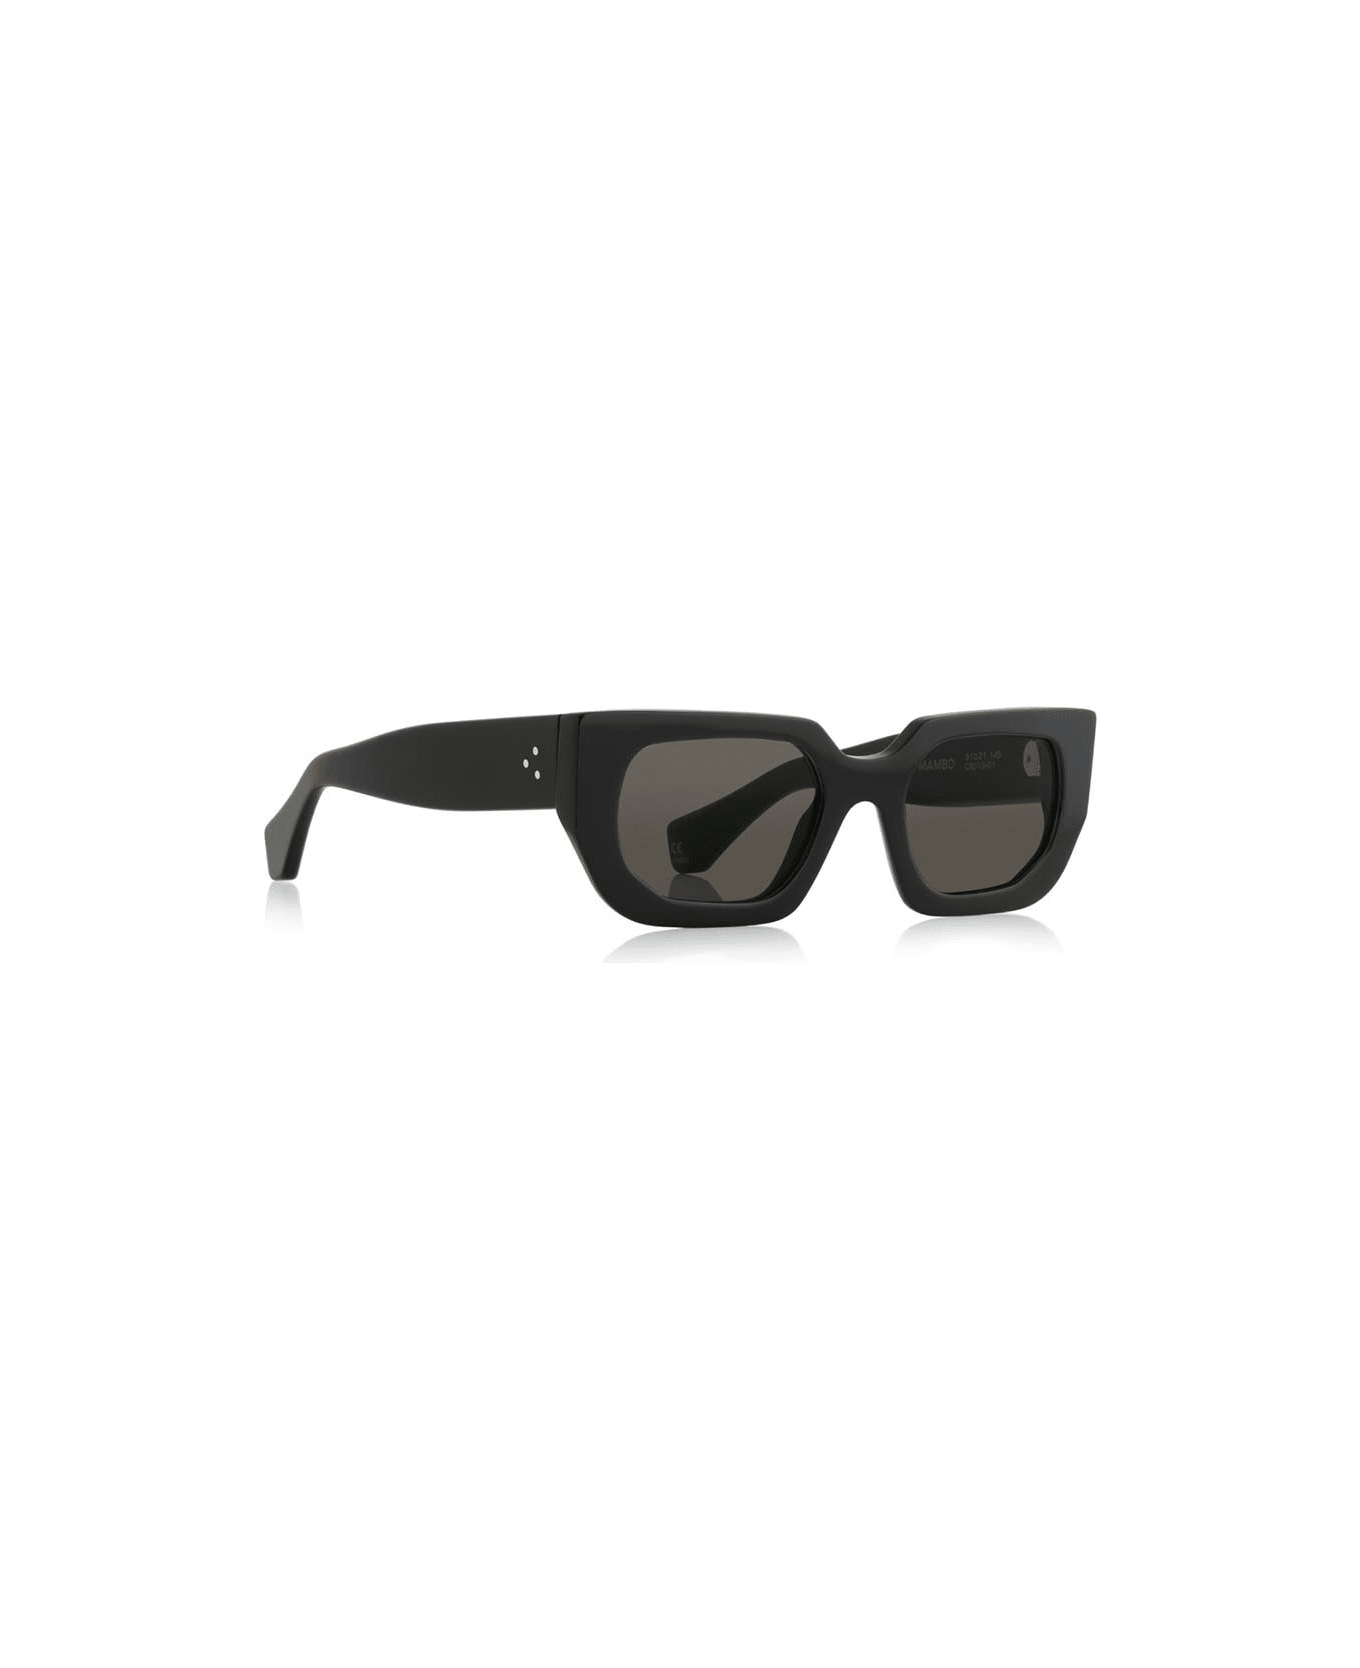 Robert La Roche Sunglasses - Nero/Nero サングラス